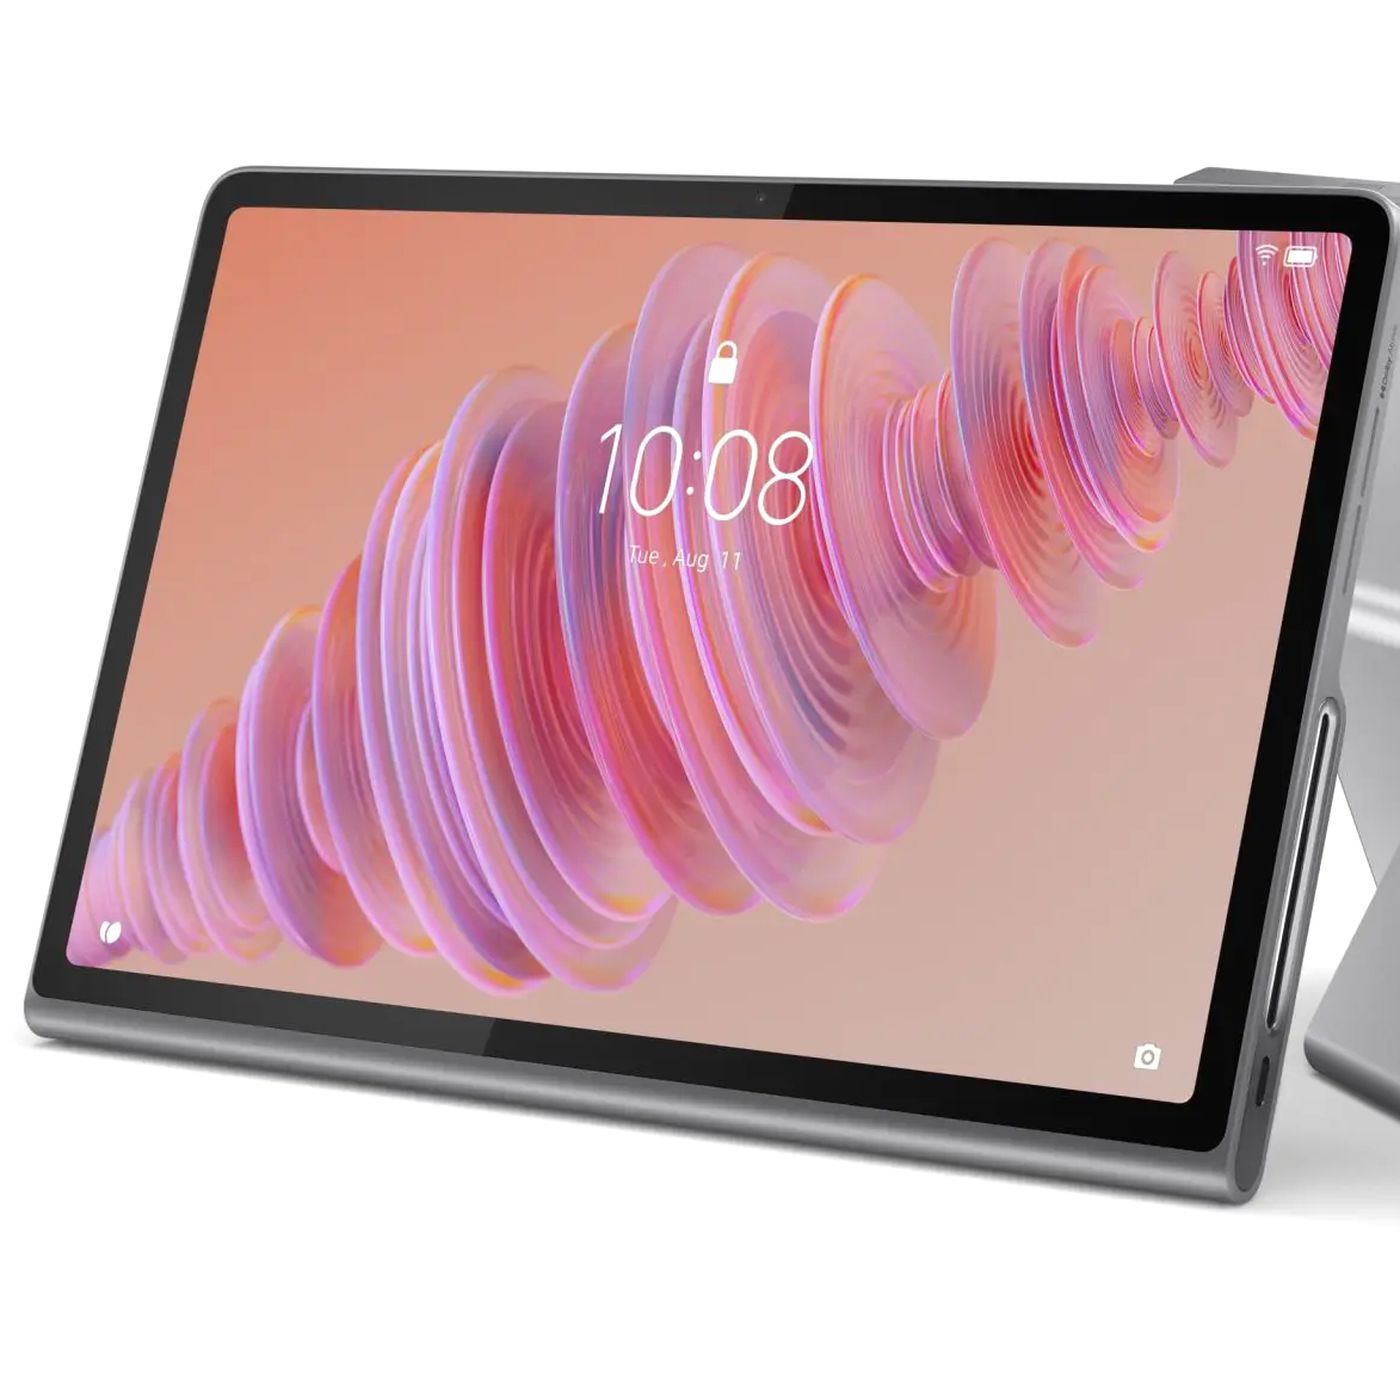 Lenovo Tab Plus, Tablet yang Cocok untuk Multimedia dengan Harga Terjangkau   